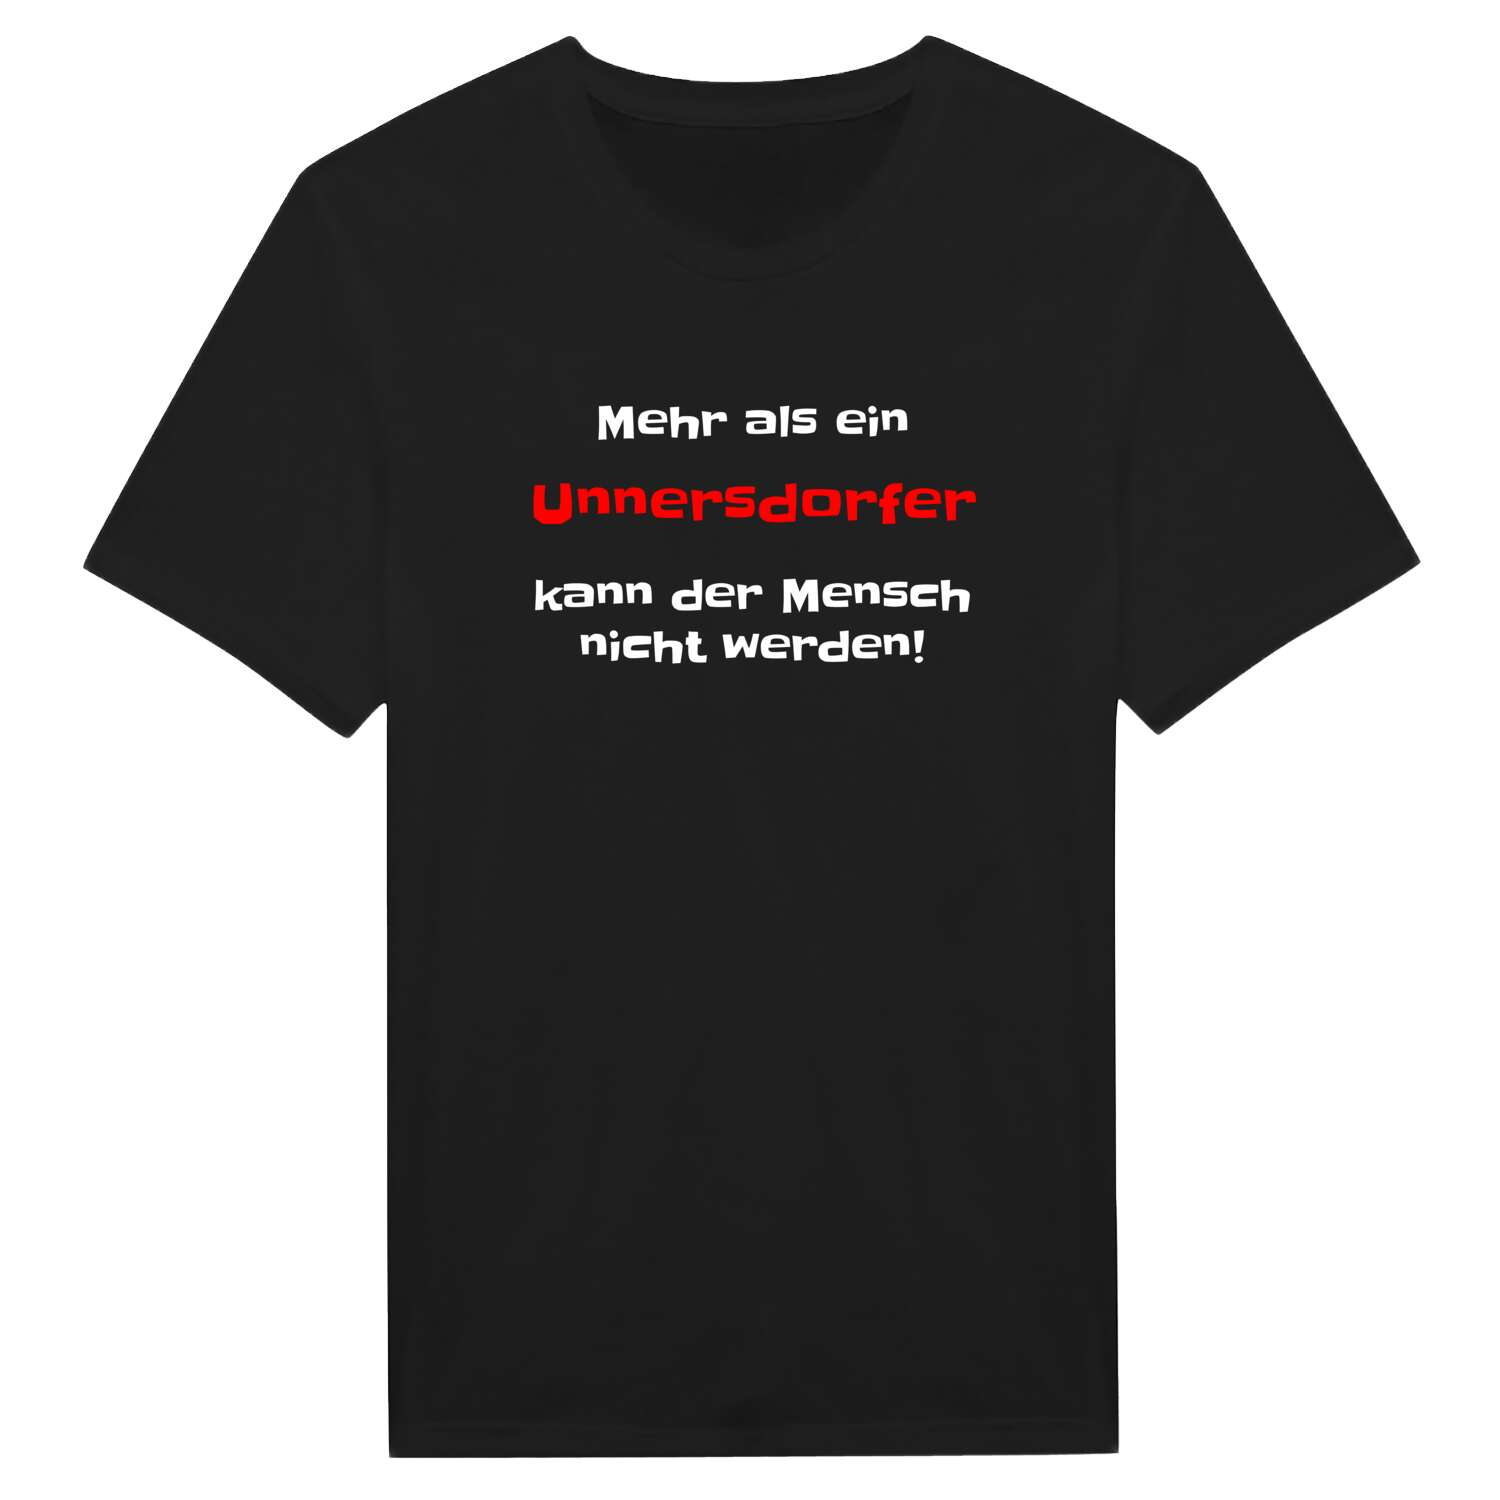 Unnersdorf T-Shirt »Mehr als ein«